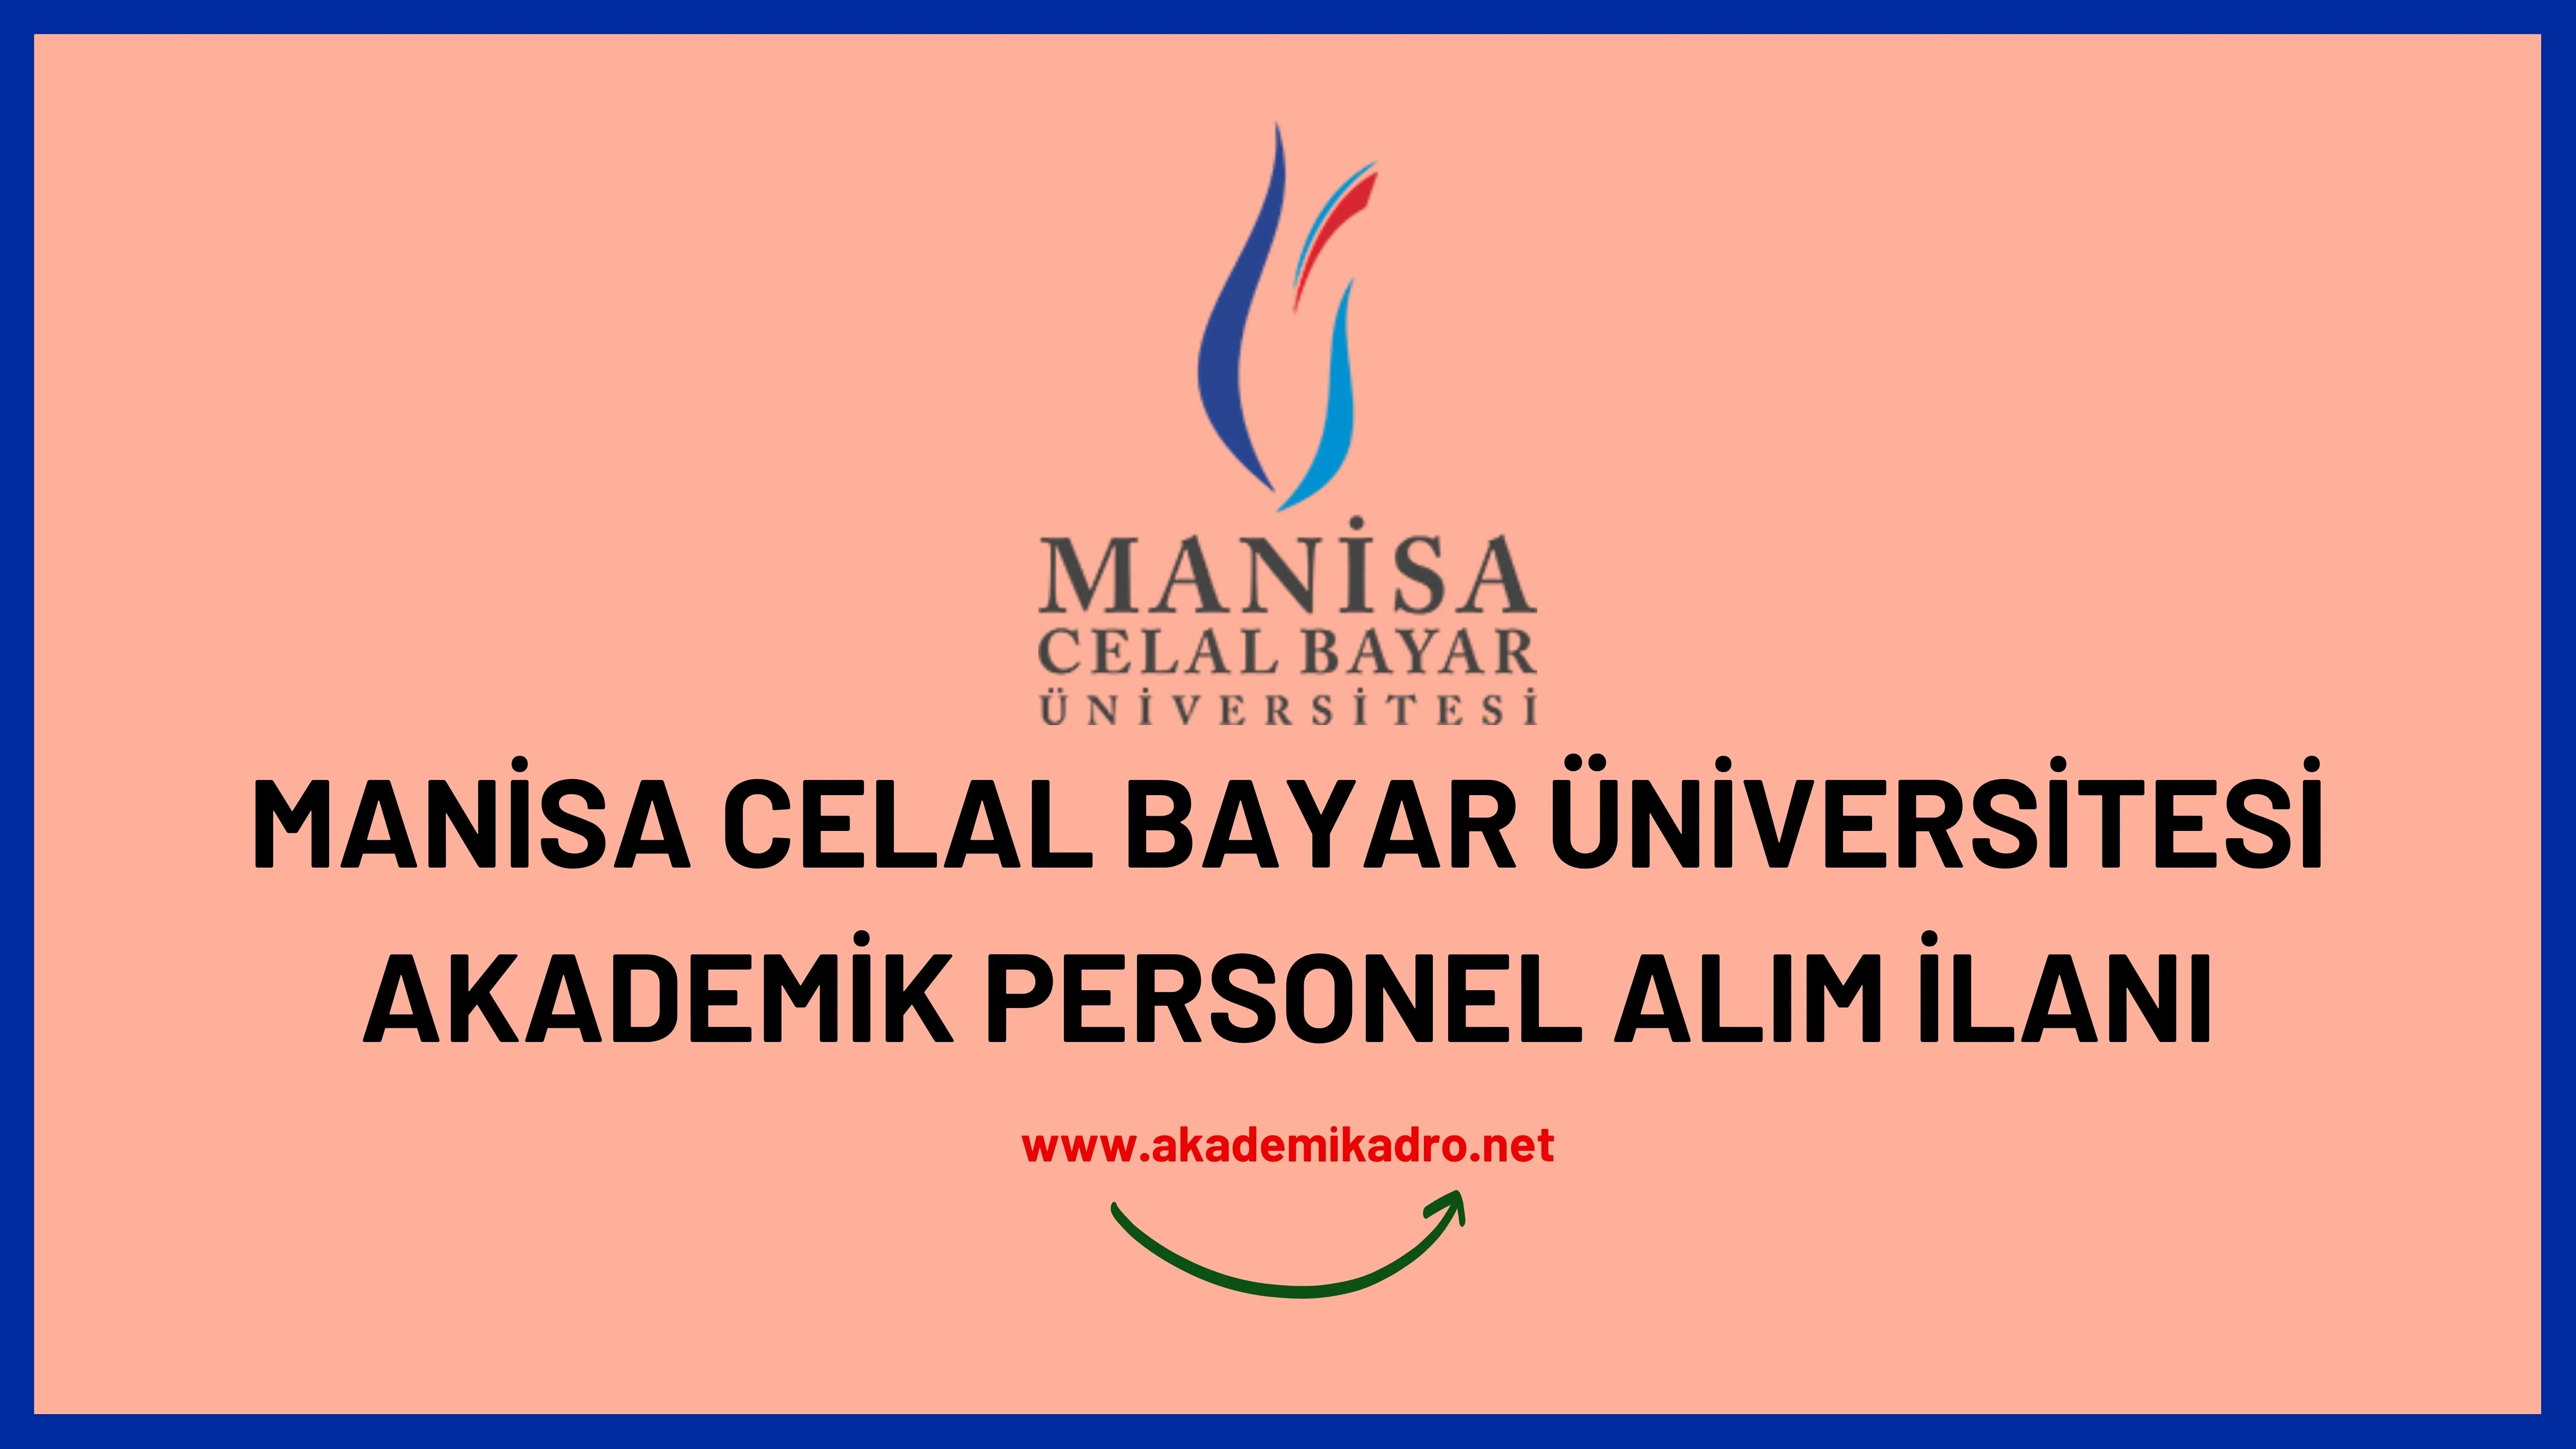 Manisa Celal Bayar Üniversitesi birçok alandan 43 akademik personel alacak.